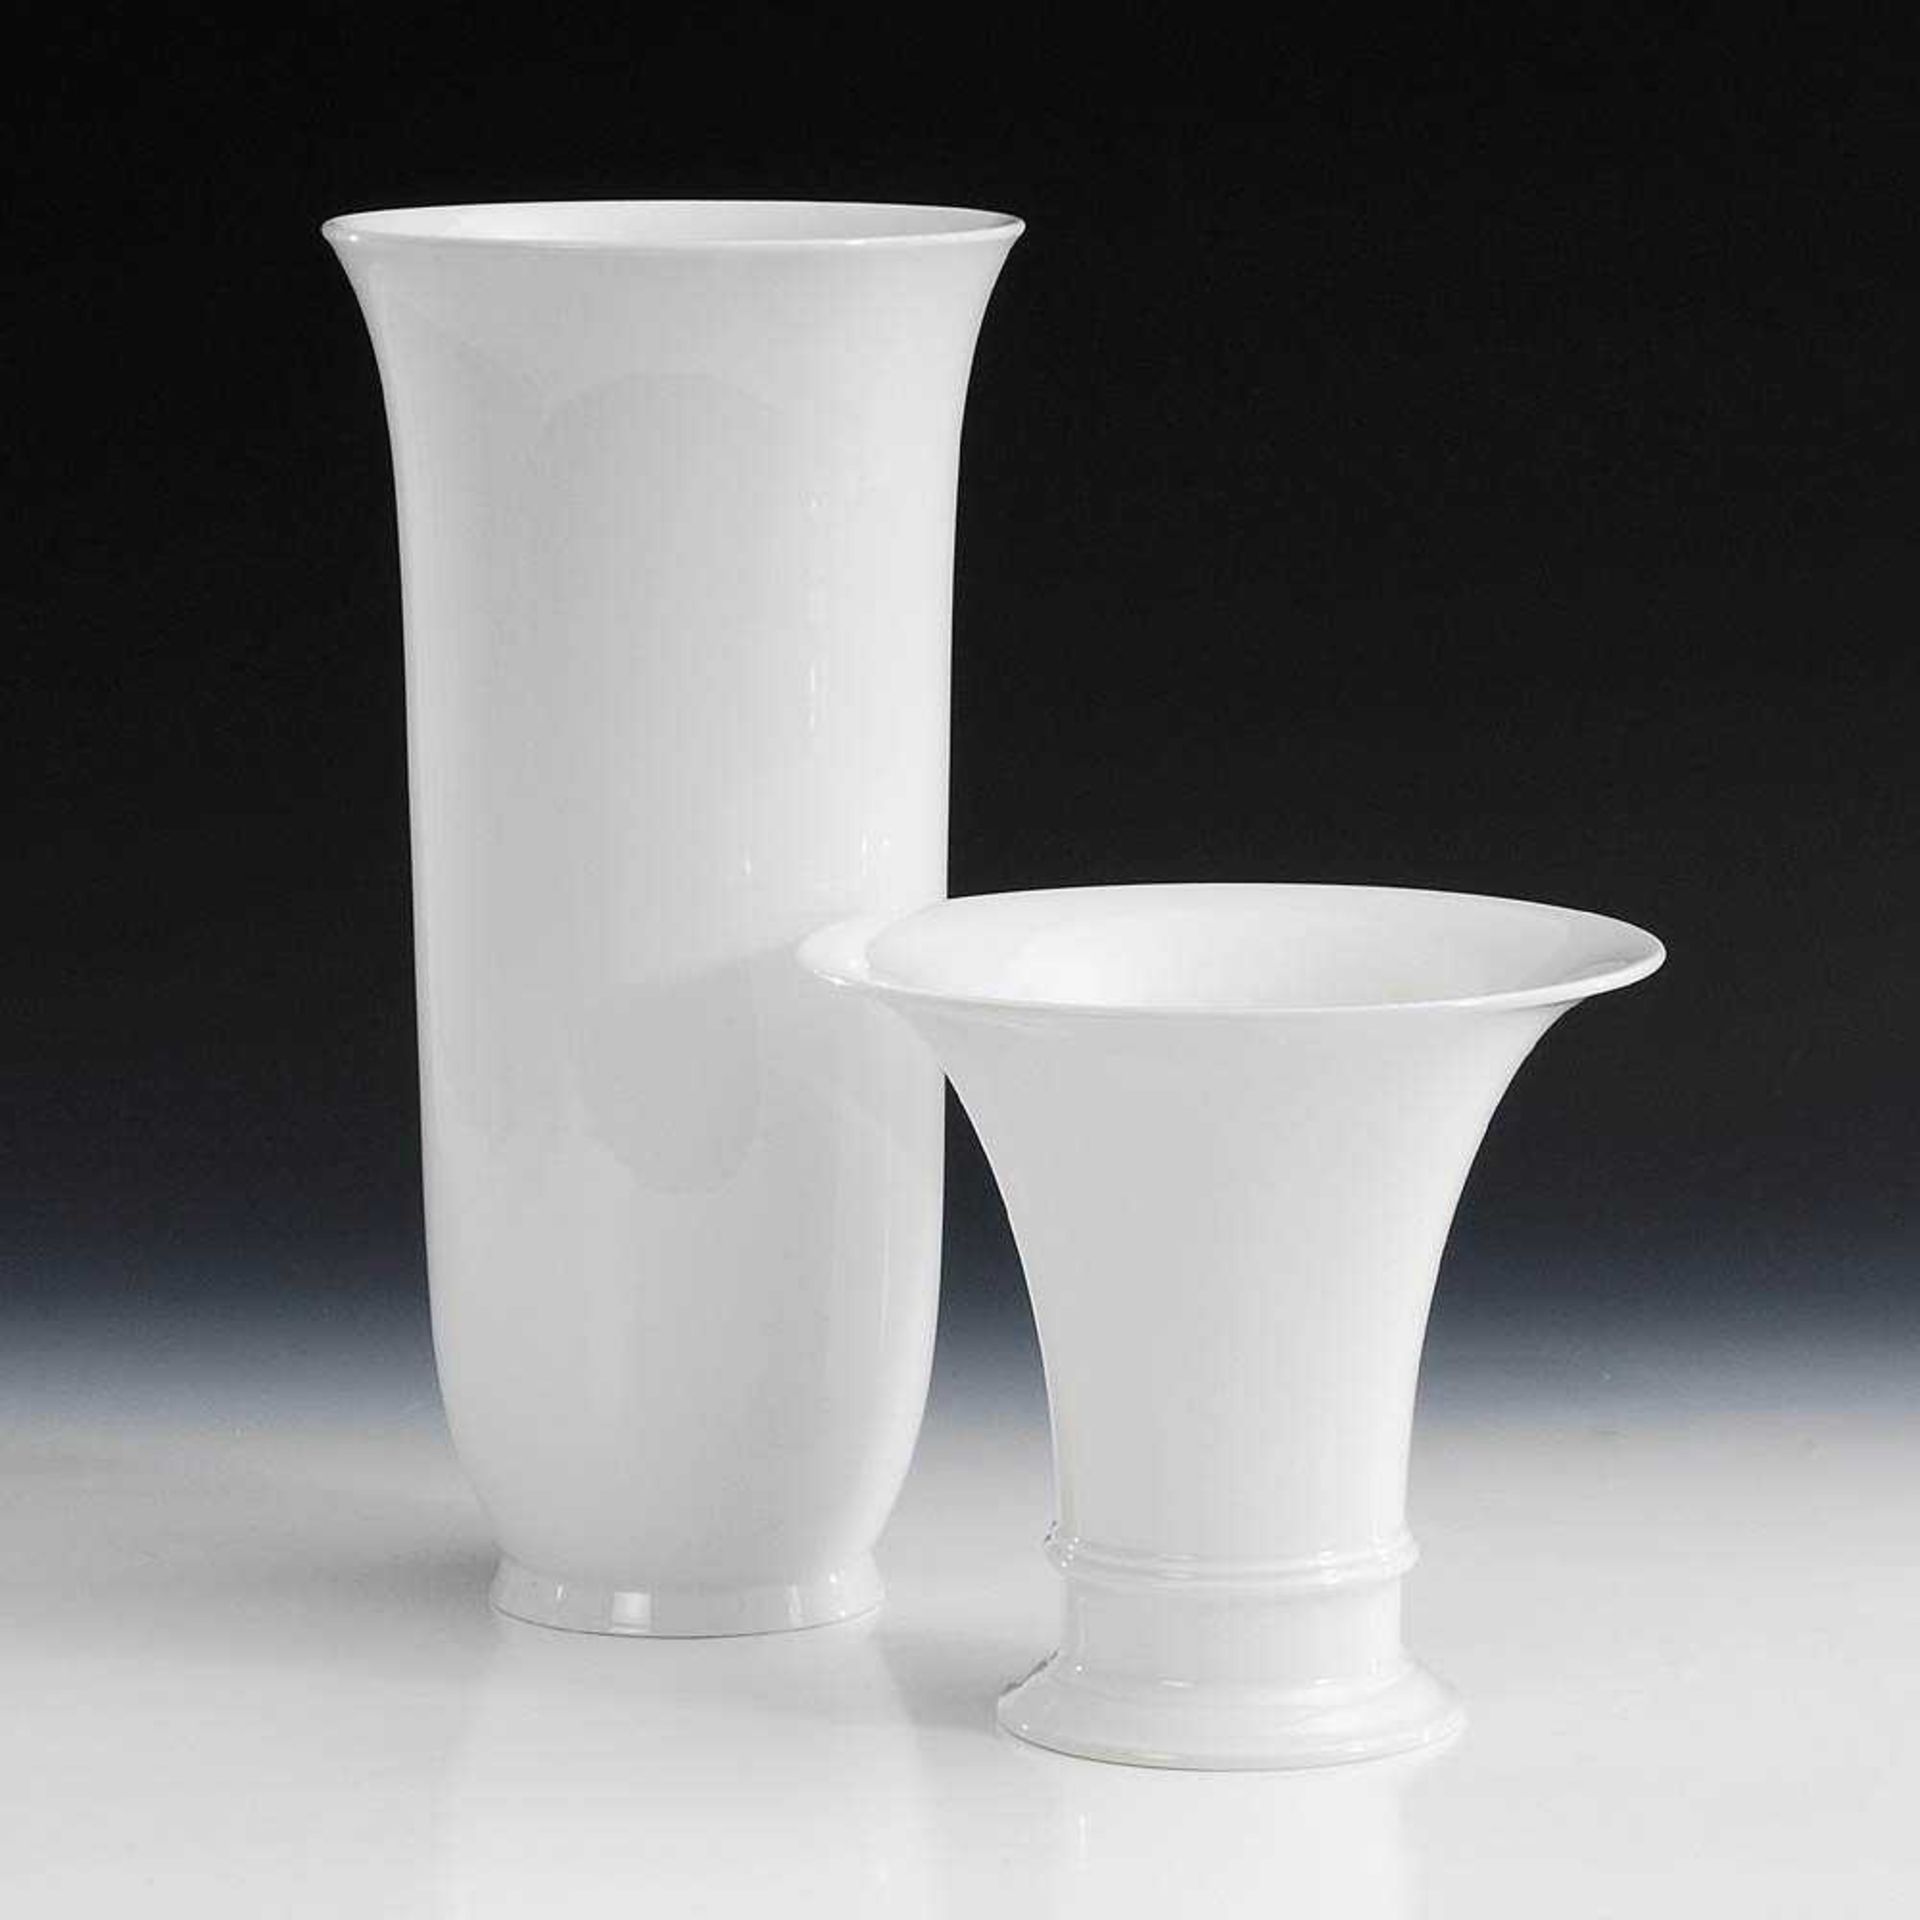 2 weiße Vasen, KPM Berlin. Blauzeptermarke, 2. H. 20. Jh. Kratervase (H 18,5 cm) und schlanke